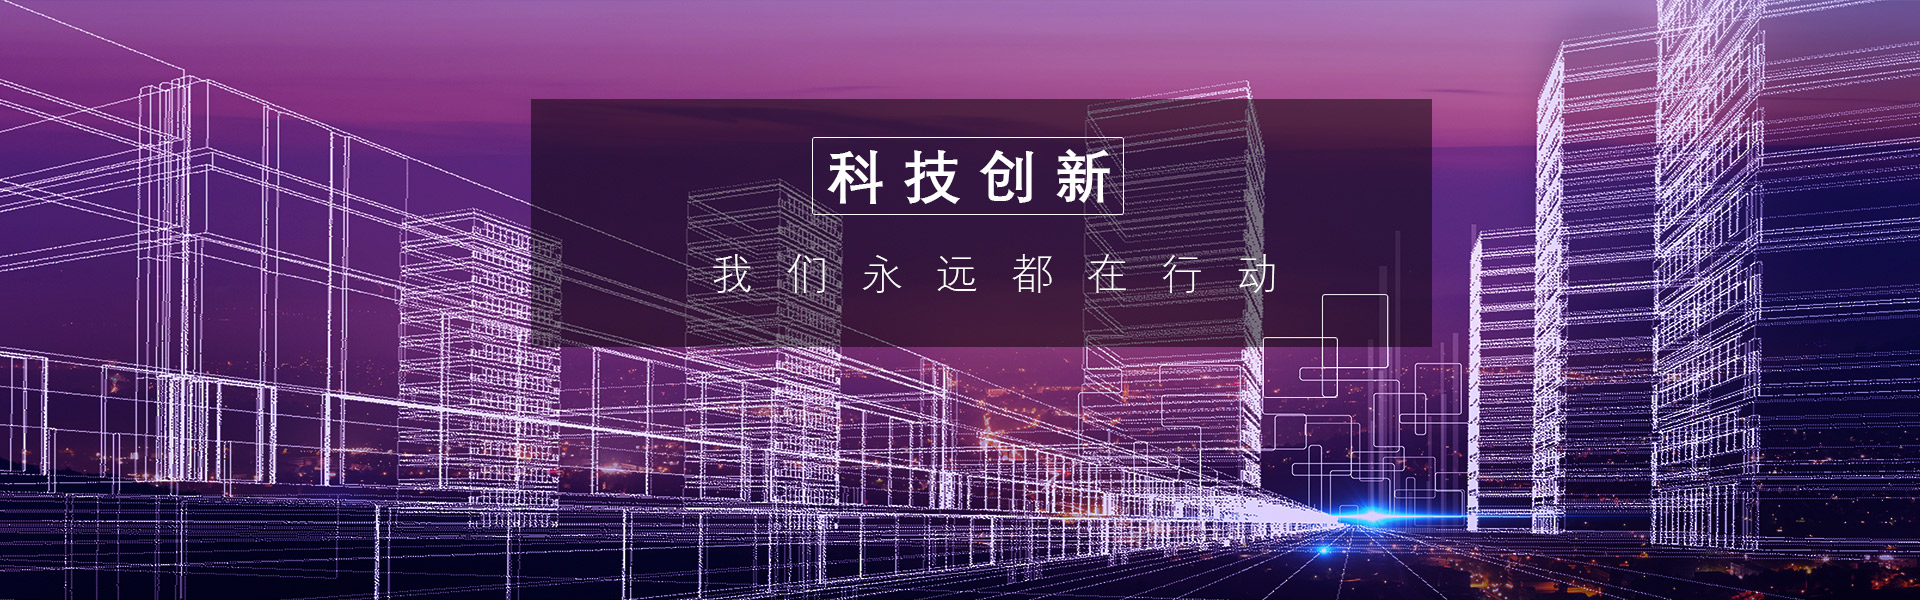 贝德-K70_超集音响_广州市天谱电器有限公司官方网站_广州市天谱电器有限公司